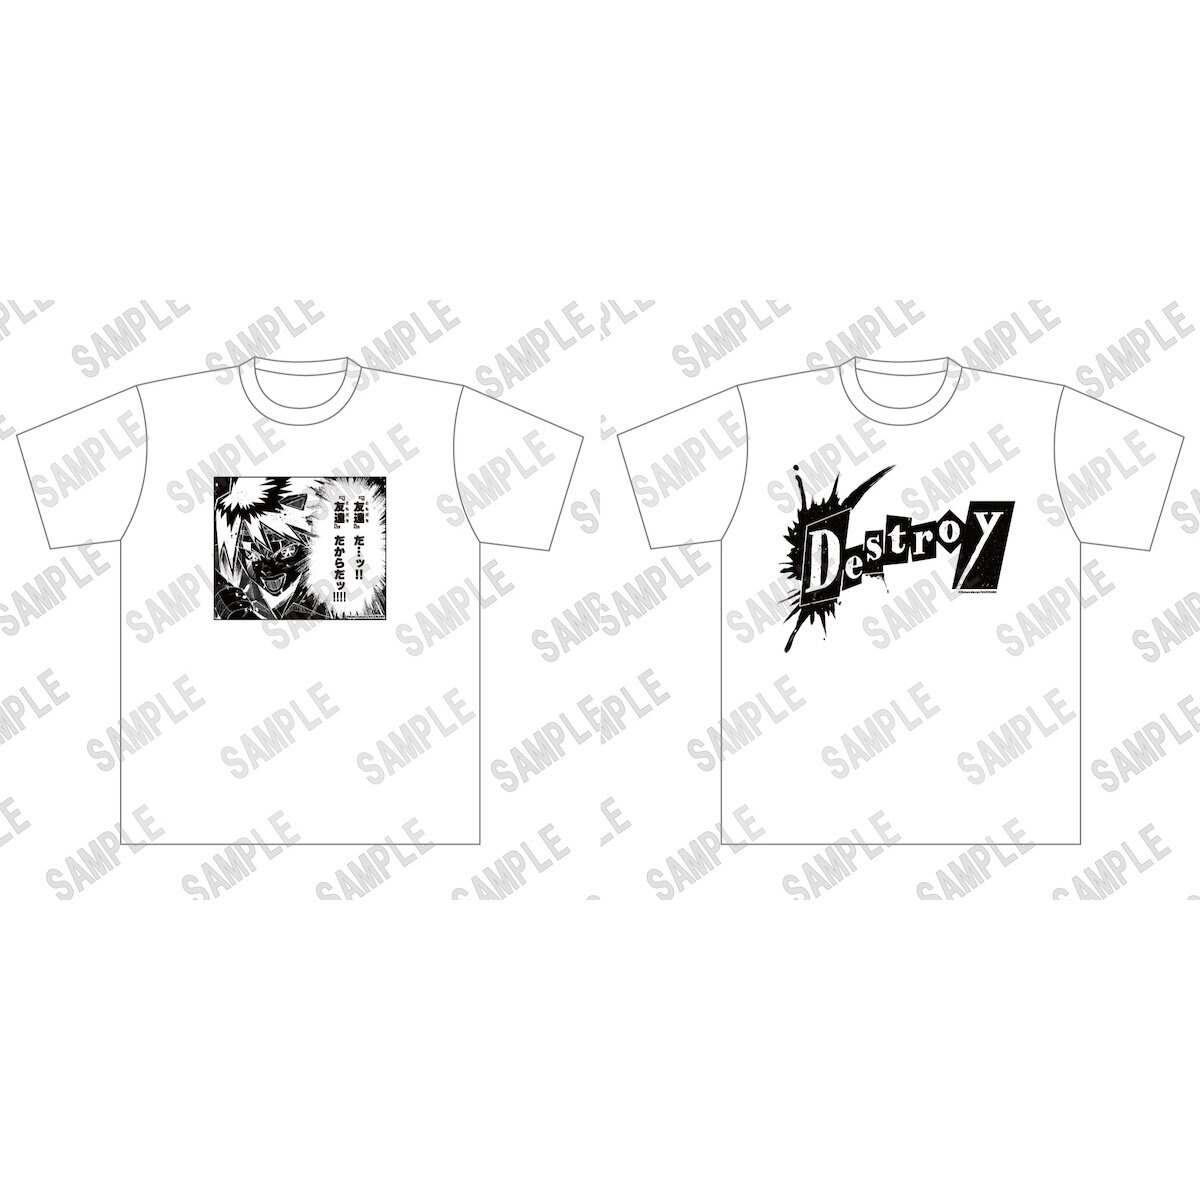 The Summer Hikaru Died Yoshiki’s T-shirt - Tokyo Otaku Mode (TOM)